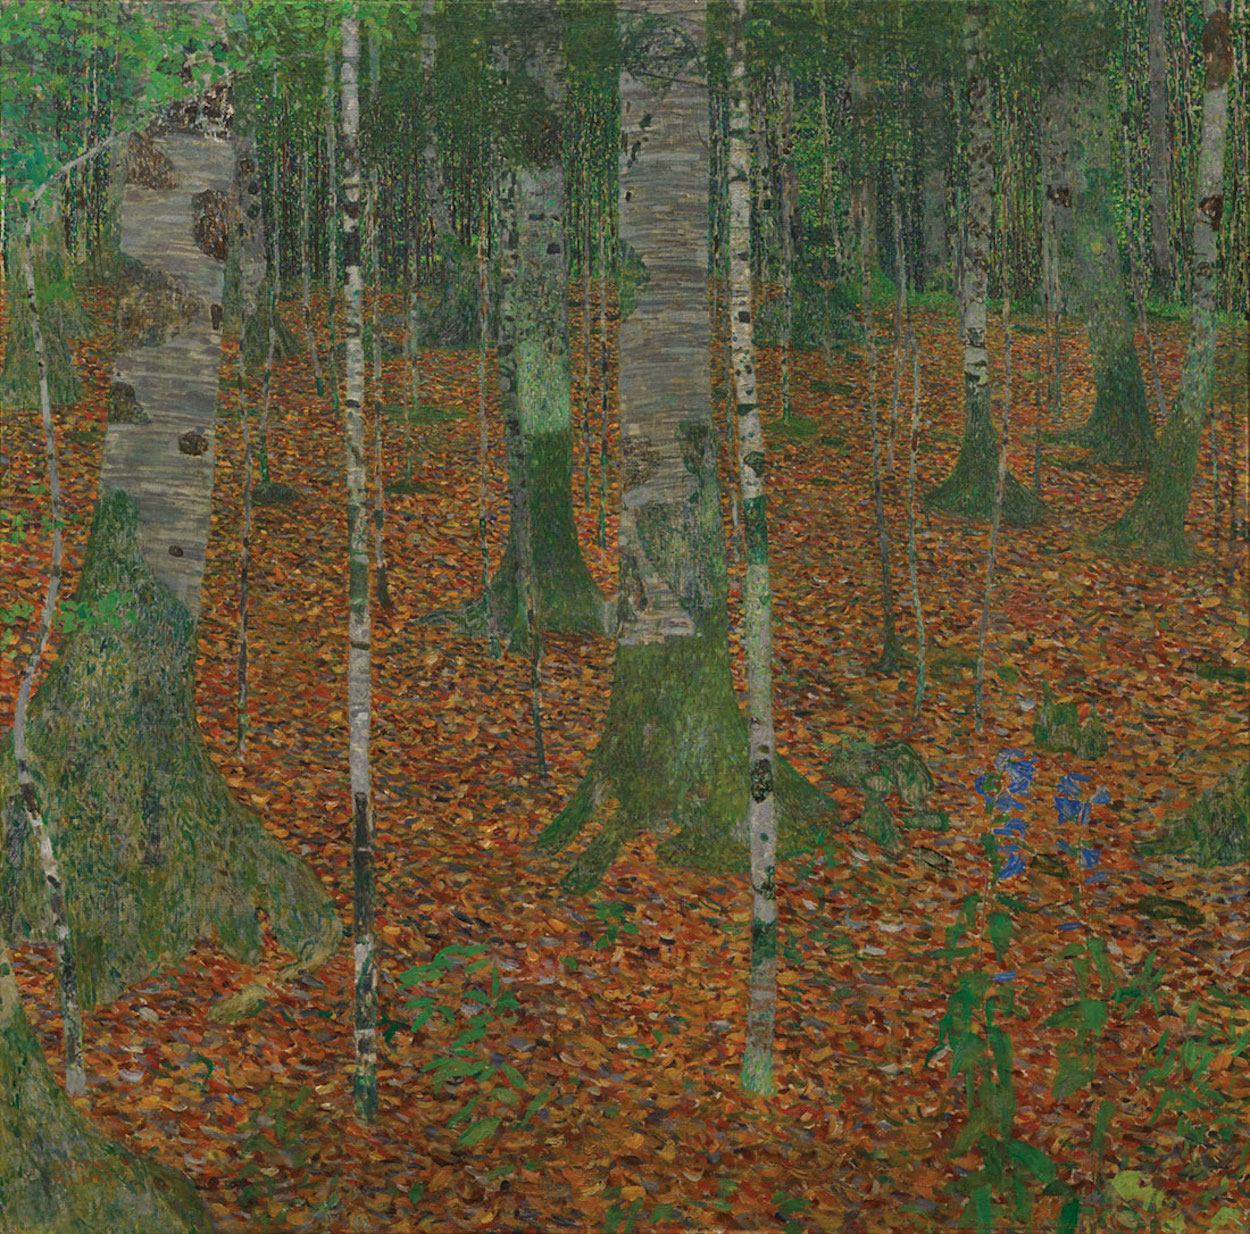 Birch Forest by Gustav Klimt - 1903 - 110 x 110 cm private collection